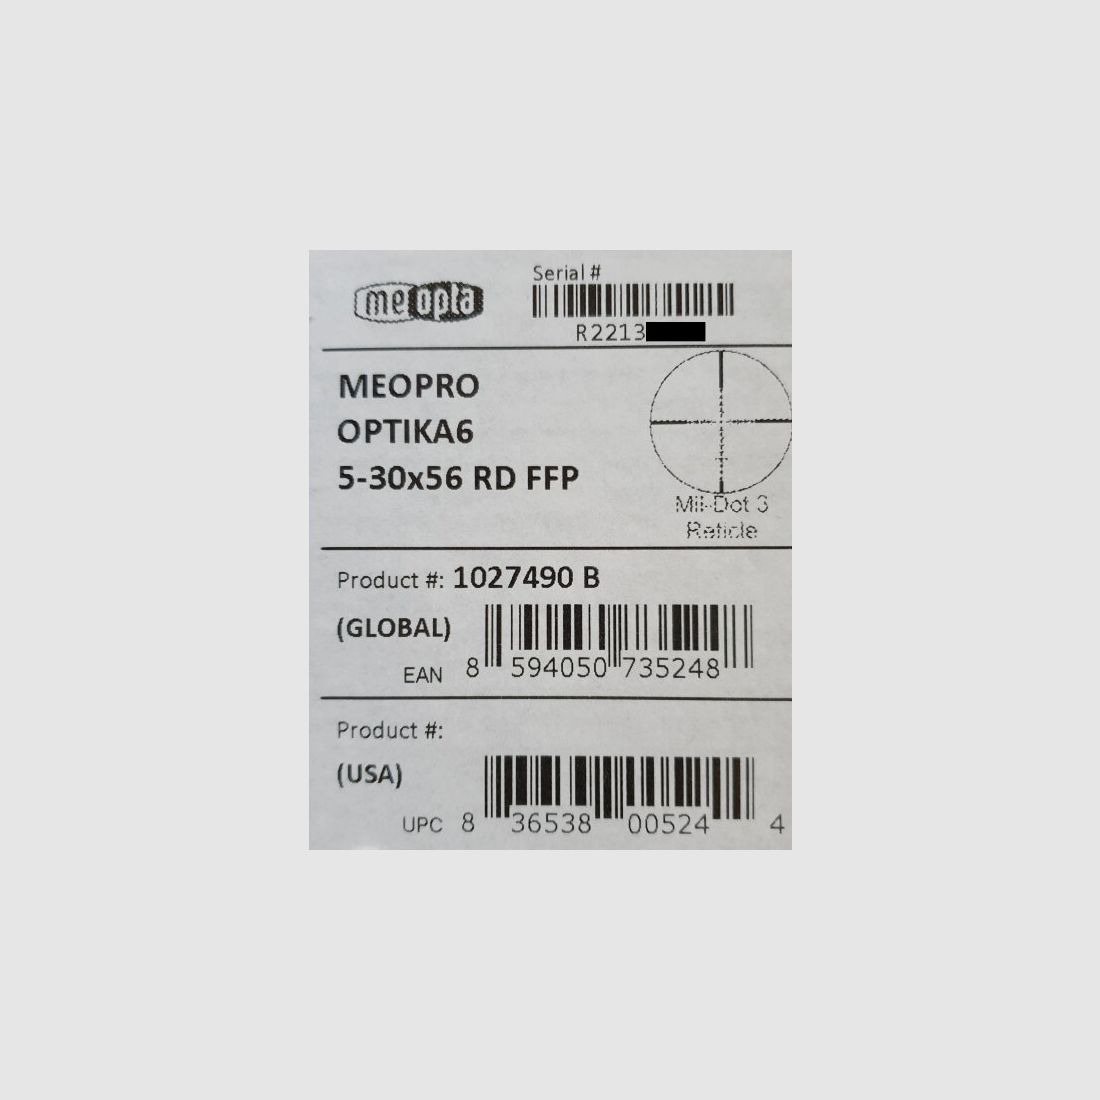 Neuware vom Fachhandel - Long Range Zielfernrohr Meopta OPTIKA6 5-30x56 RD FFP Absehen MilDot-3 LK